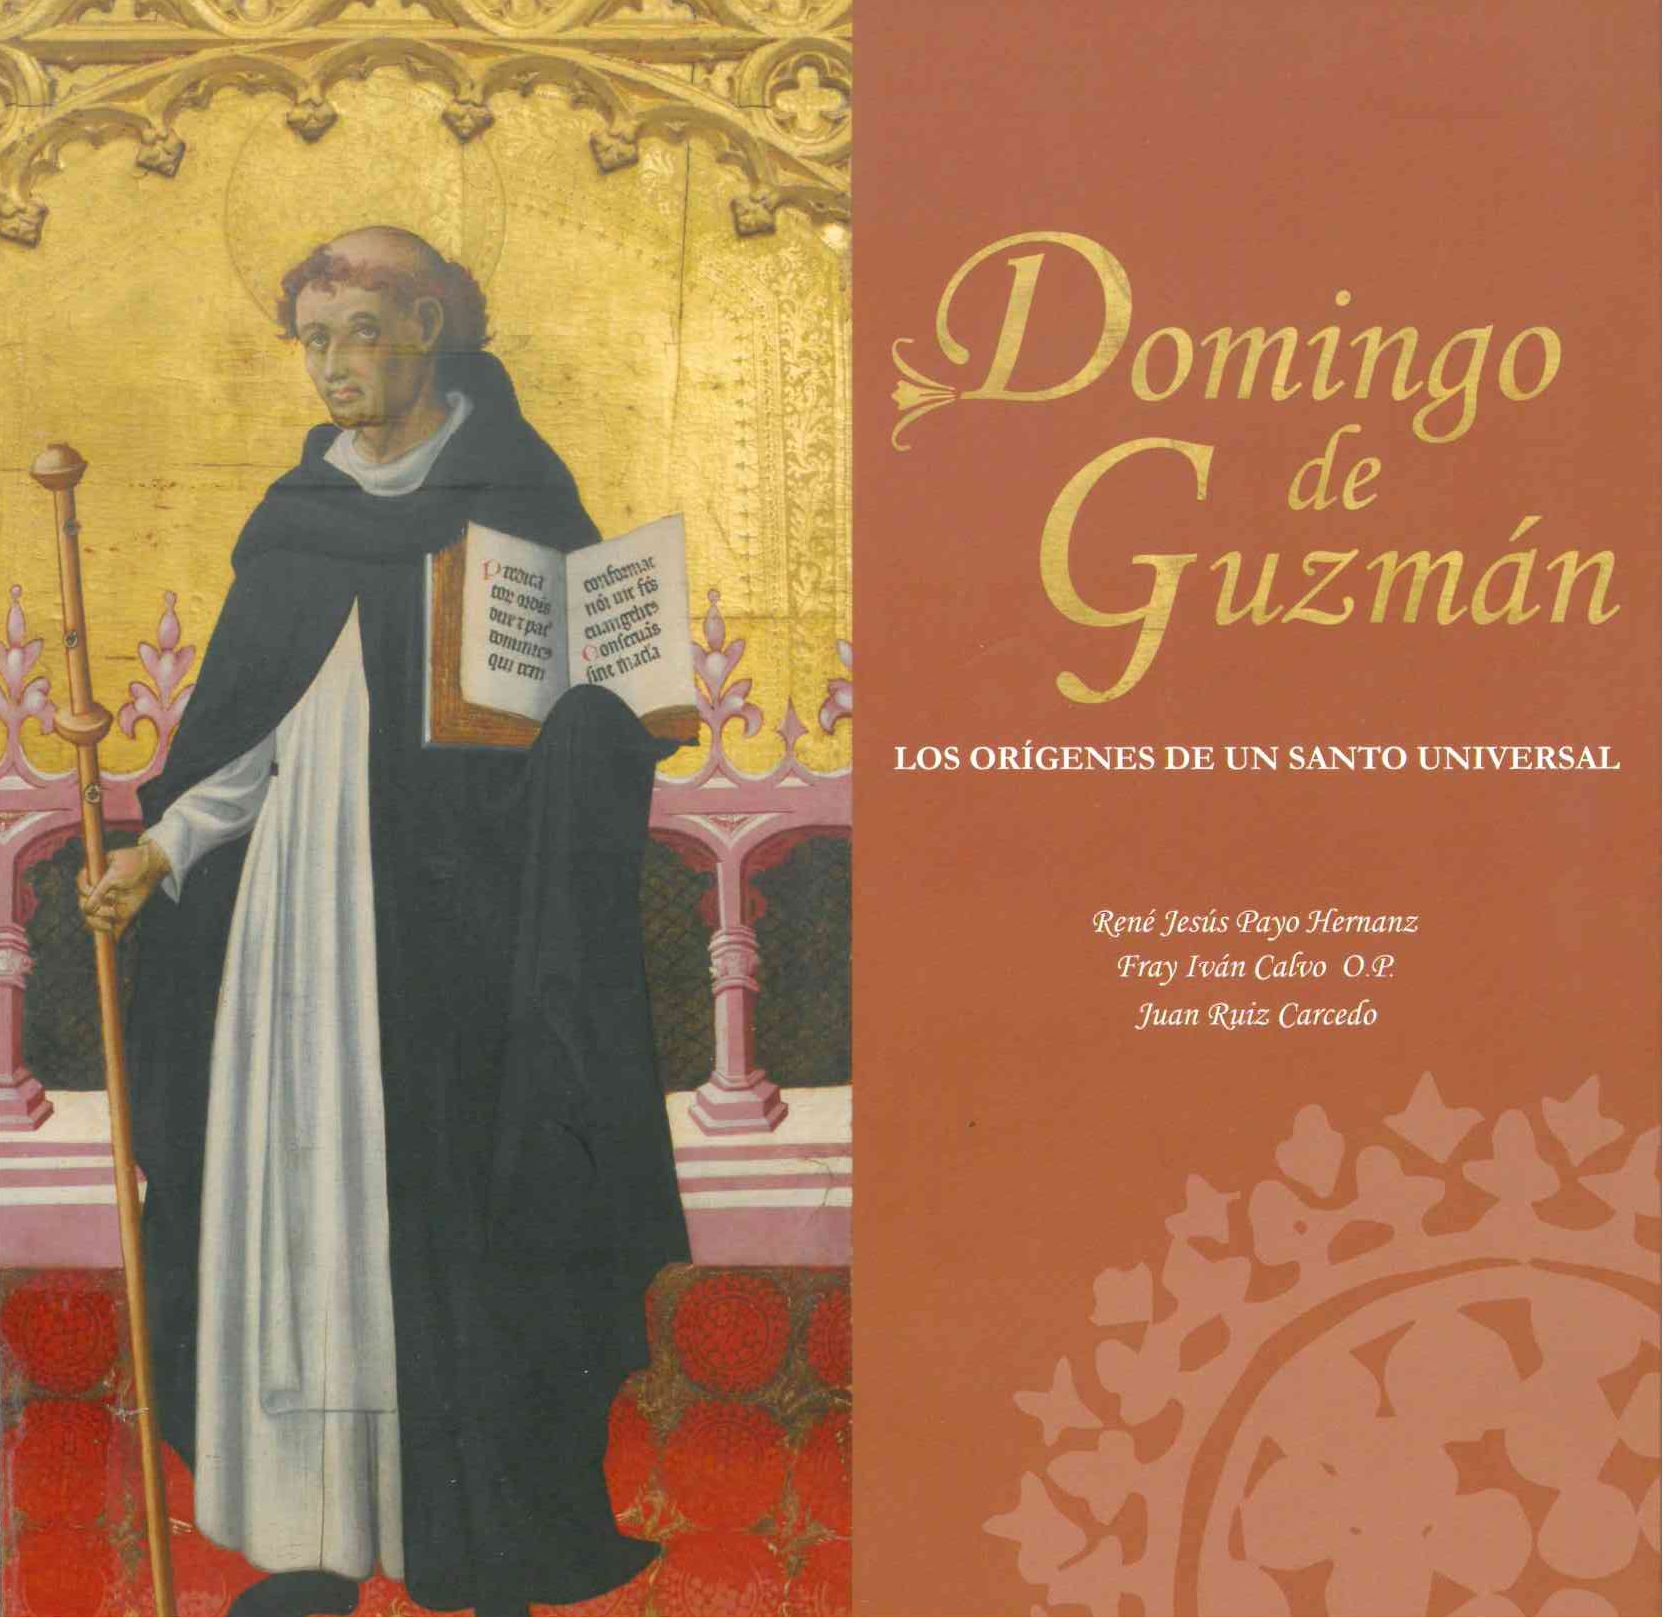 Imagen de portada del libro Domingo de Guzmán